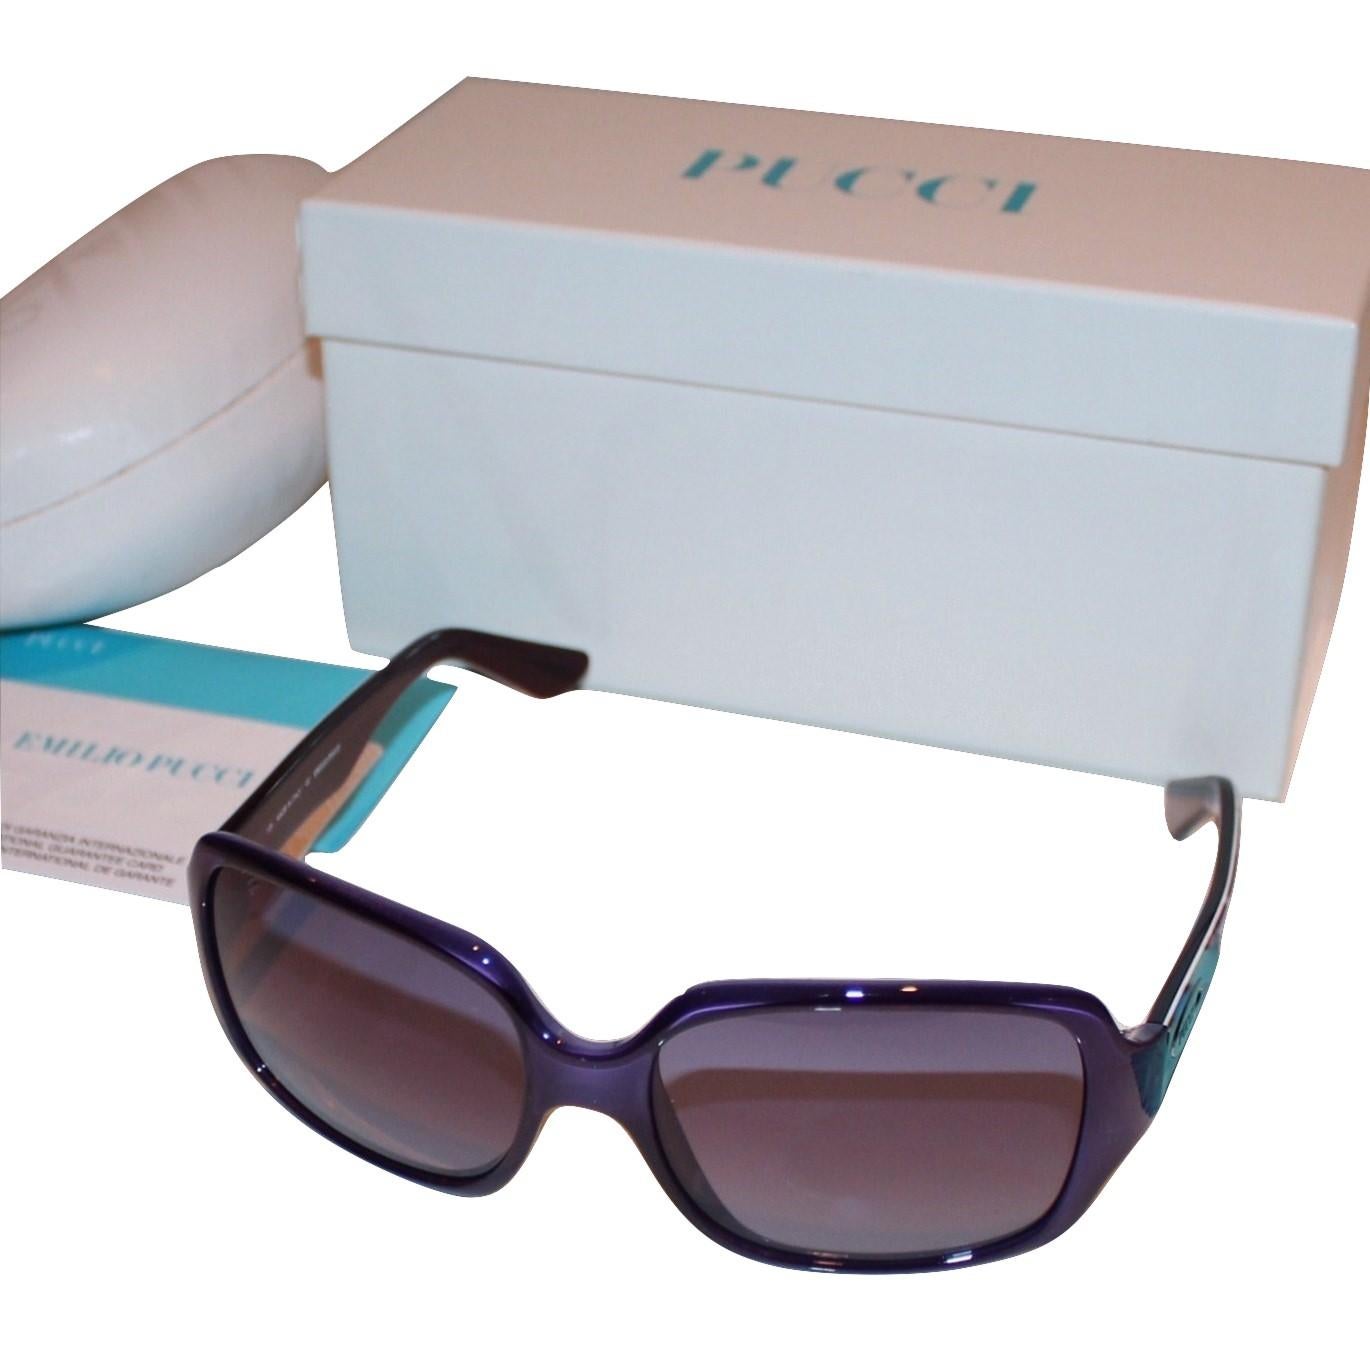 New Emilio Pucci Purple Logo Sunglasses  With Case & Box 9